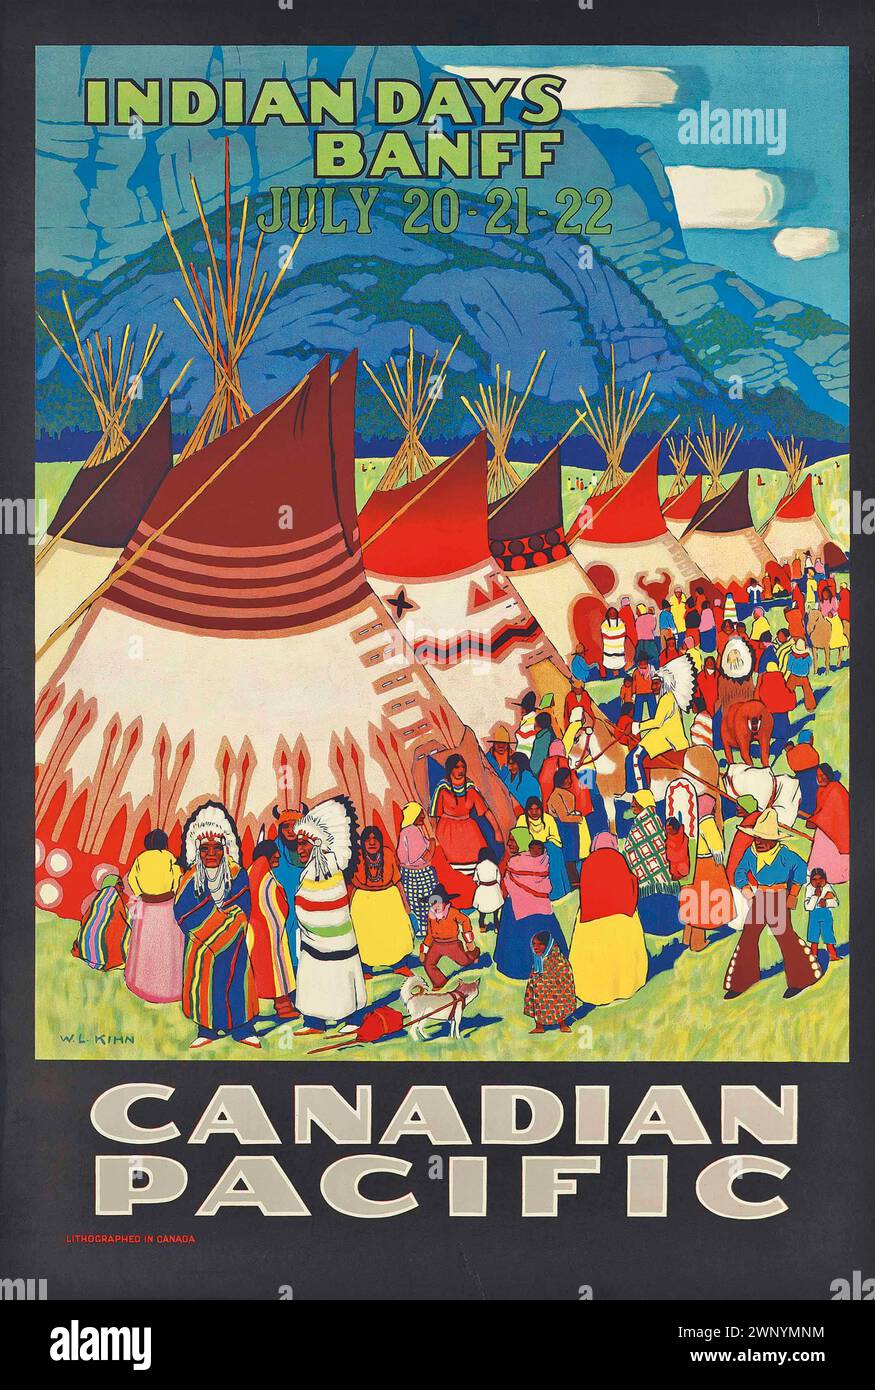 Vintage-Reiseposter. Canadian Pacific Railroad, Indian Days Banff. Von Wilfred Langdon Kihn, ca. 1930er Jahre Mit einem indigenen Dorf mit Tipis und Menschen in traditioneller Festkleidung Stockfoto